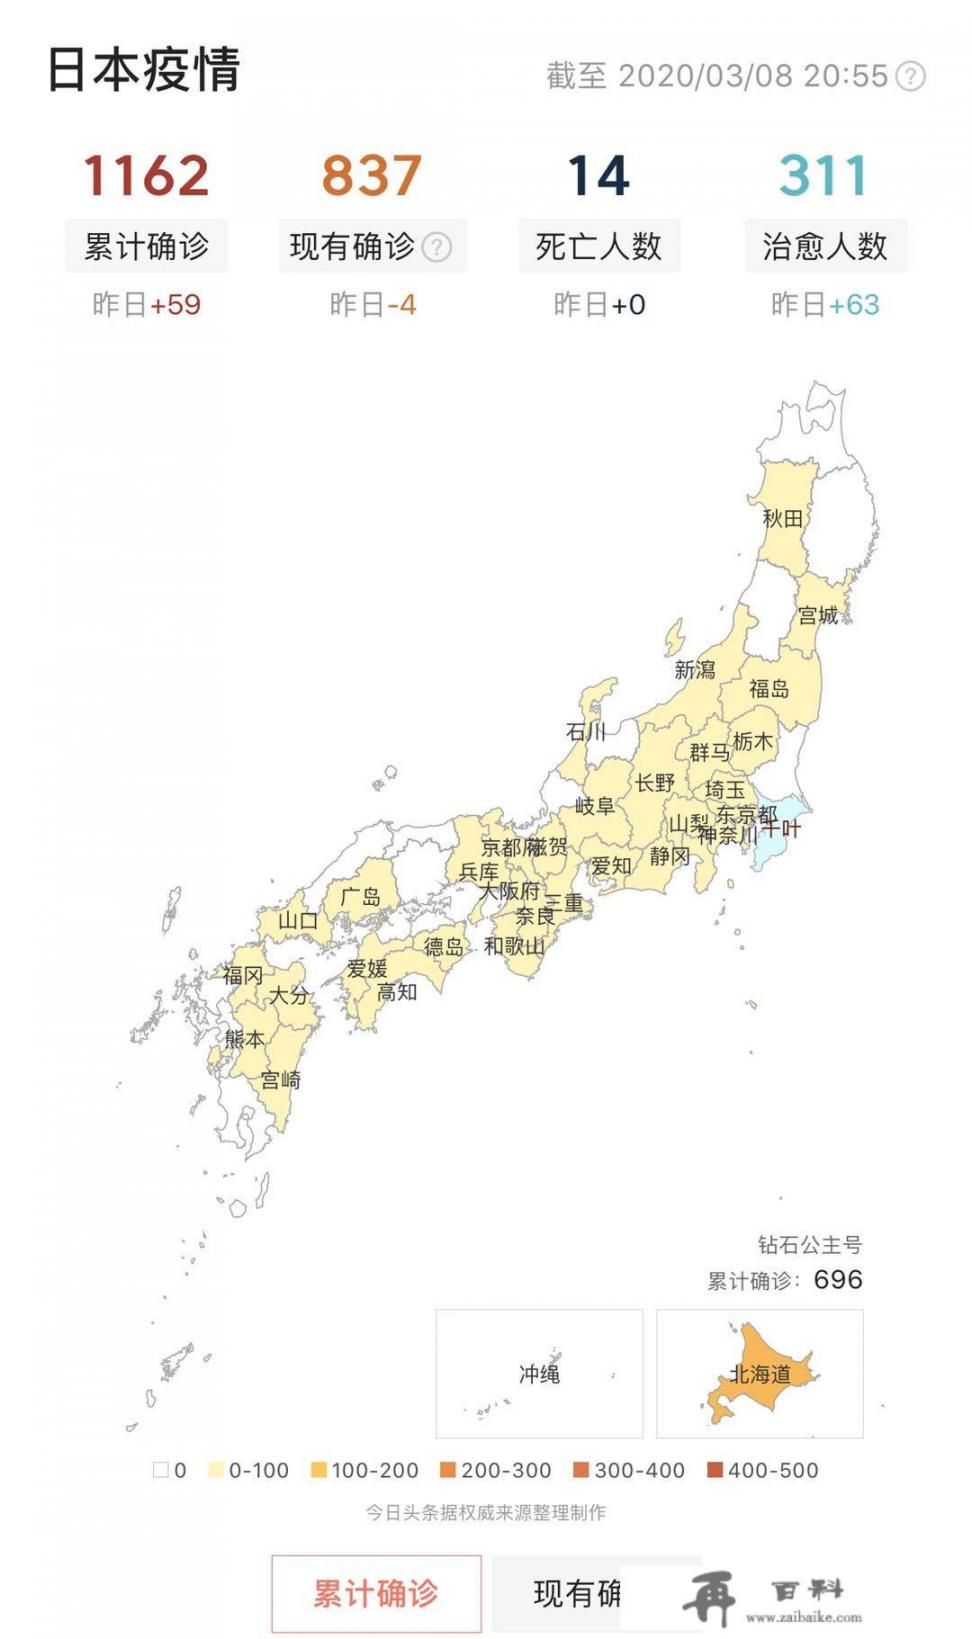 日本大阪是否是这次防疫的重点地区？日本疫情现状如何